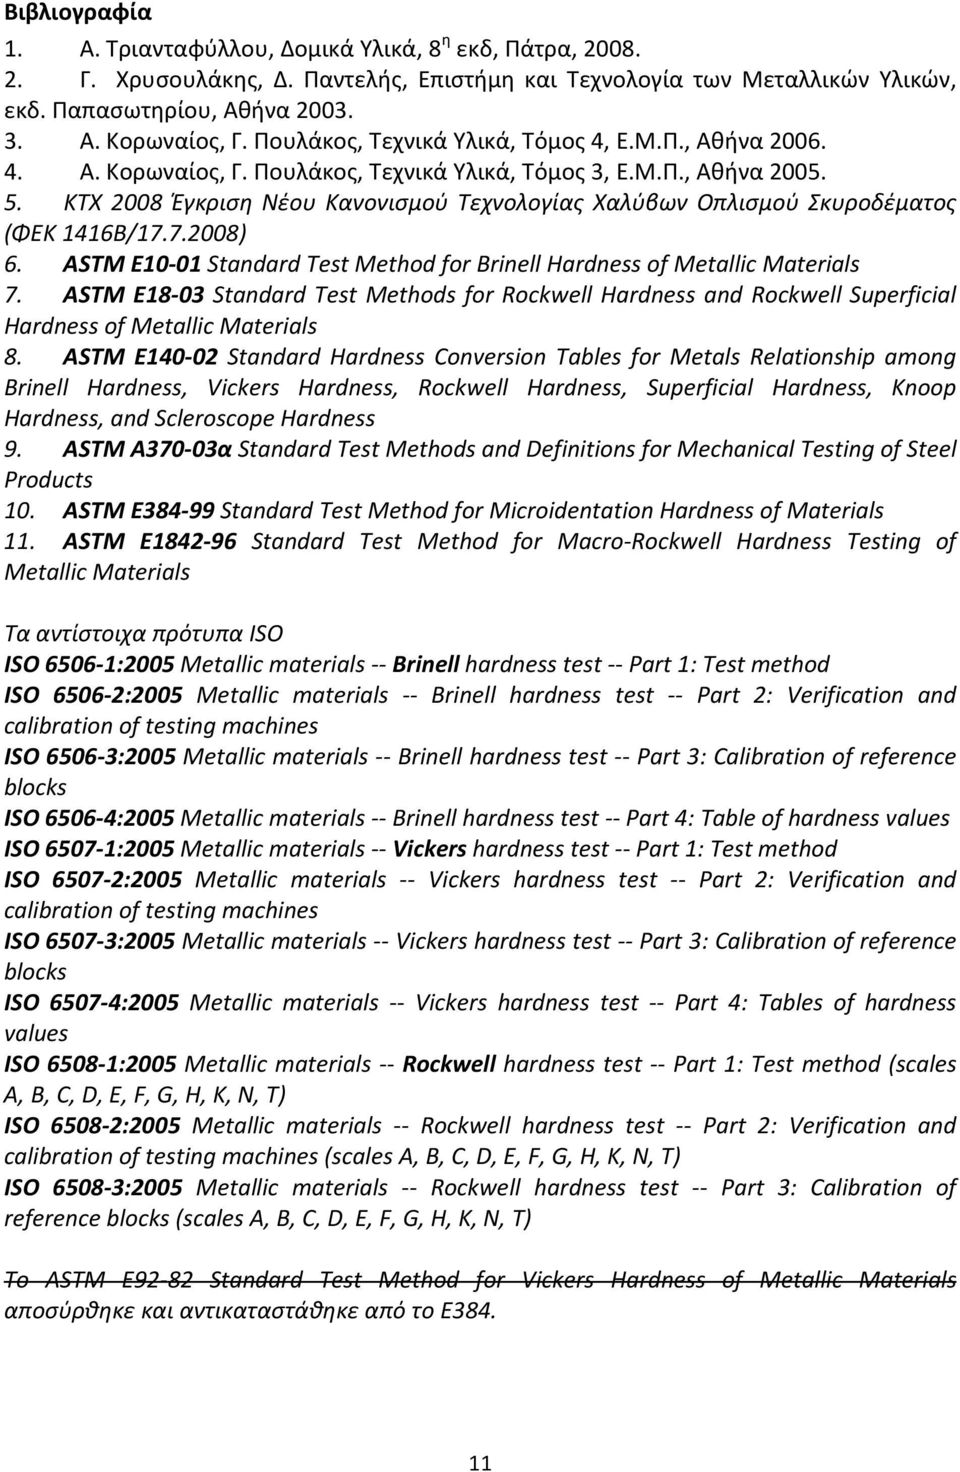 ΚΤΧ 2008 Έγκριση Νέου Κανονισμού Τεχνολογίας Χαλύβων Οπλισμού Σκυροδέματος (ΦΕΚ 1416Β/17.7.2008) 6. ASTM E10-01 Standard Test Method for Brinell Hardness of Metallic Materials 7.